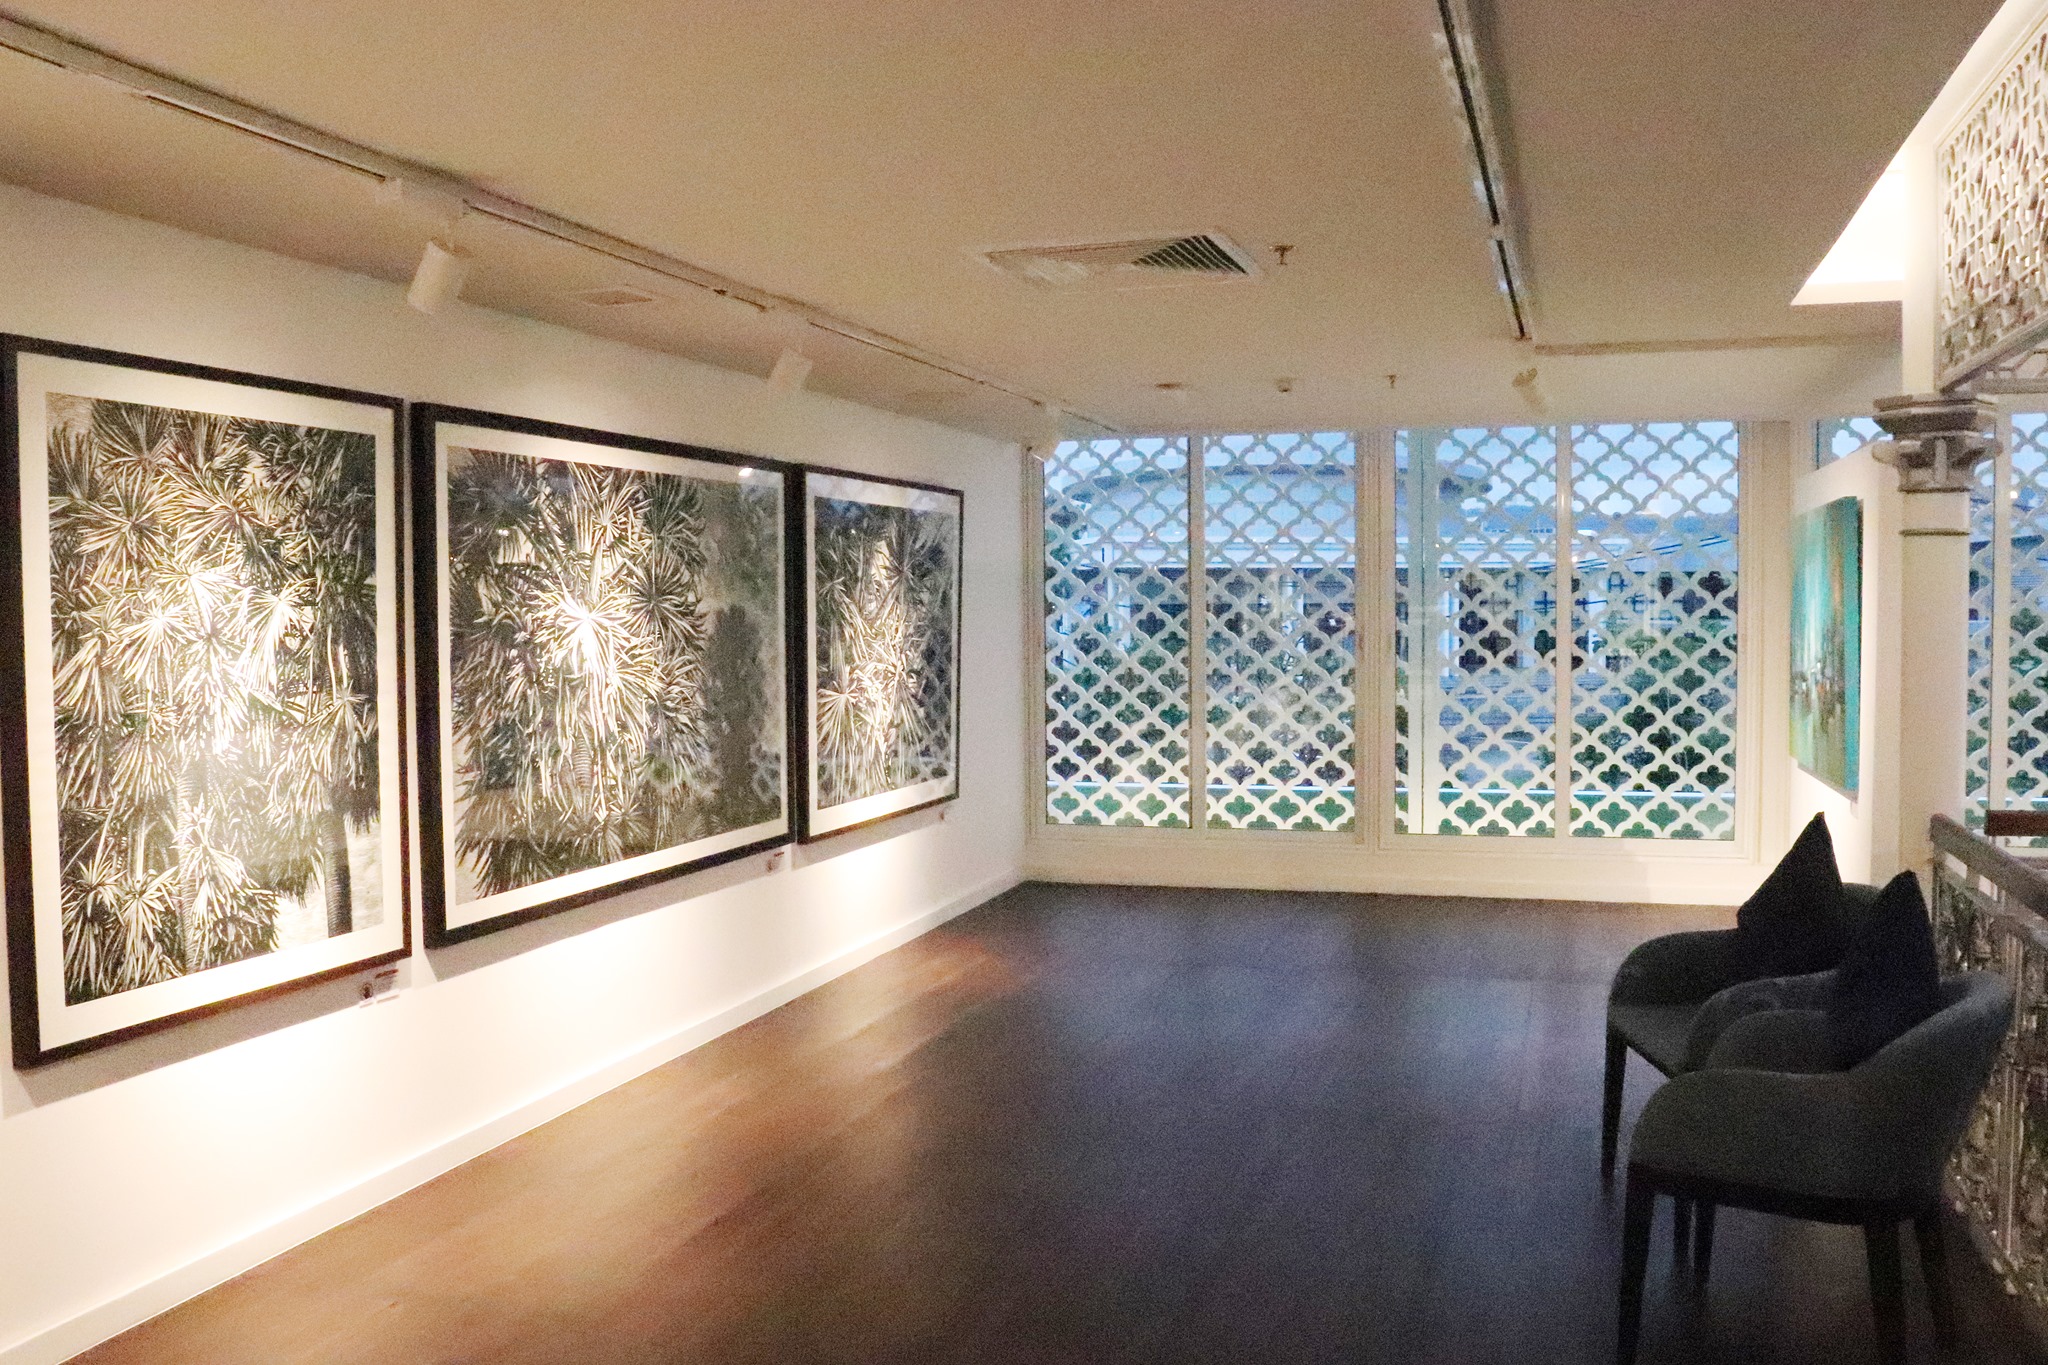 โรงแรมรามาดา พลาซ่า เจ้าฟ้า เปิดตัวพื้นที่แสดงผลงานศิลปะ Art @ Chaofah พร้อมจัดแสดงผลงานศิลปะชุดแรกในคอนเซป “CONTRASTS”